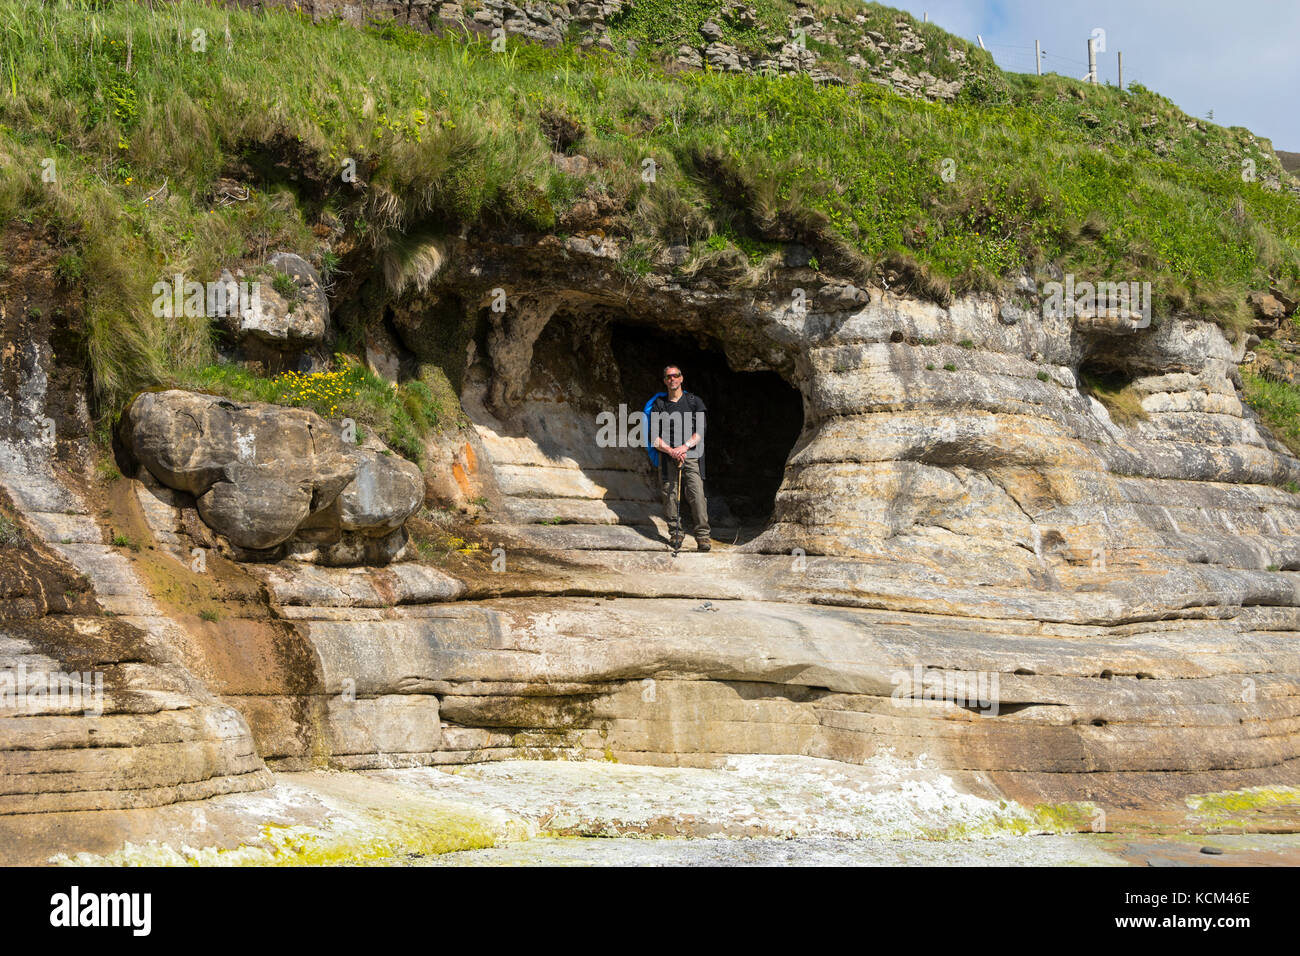 Mann stand in einer Höhle am nördlichen Ende der Bucht von laig auf der Isle of Eigg, Schottland, UK Stockfoto